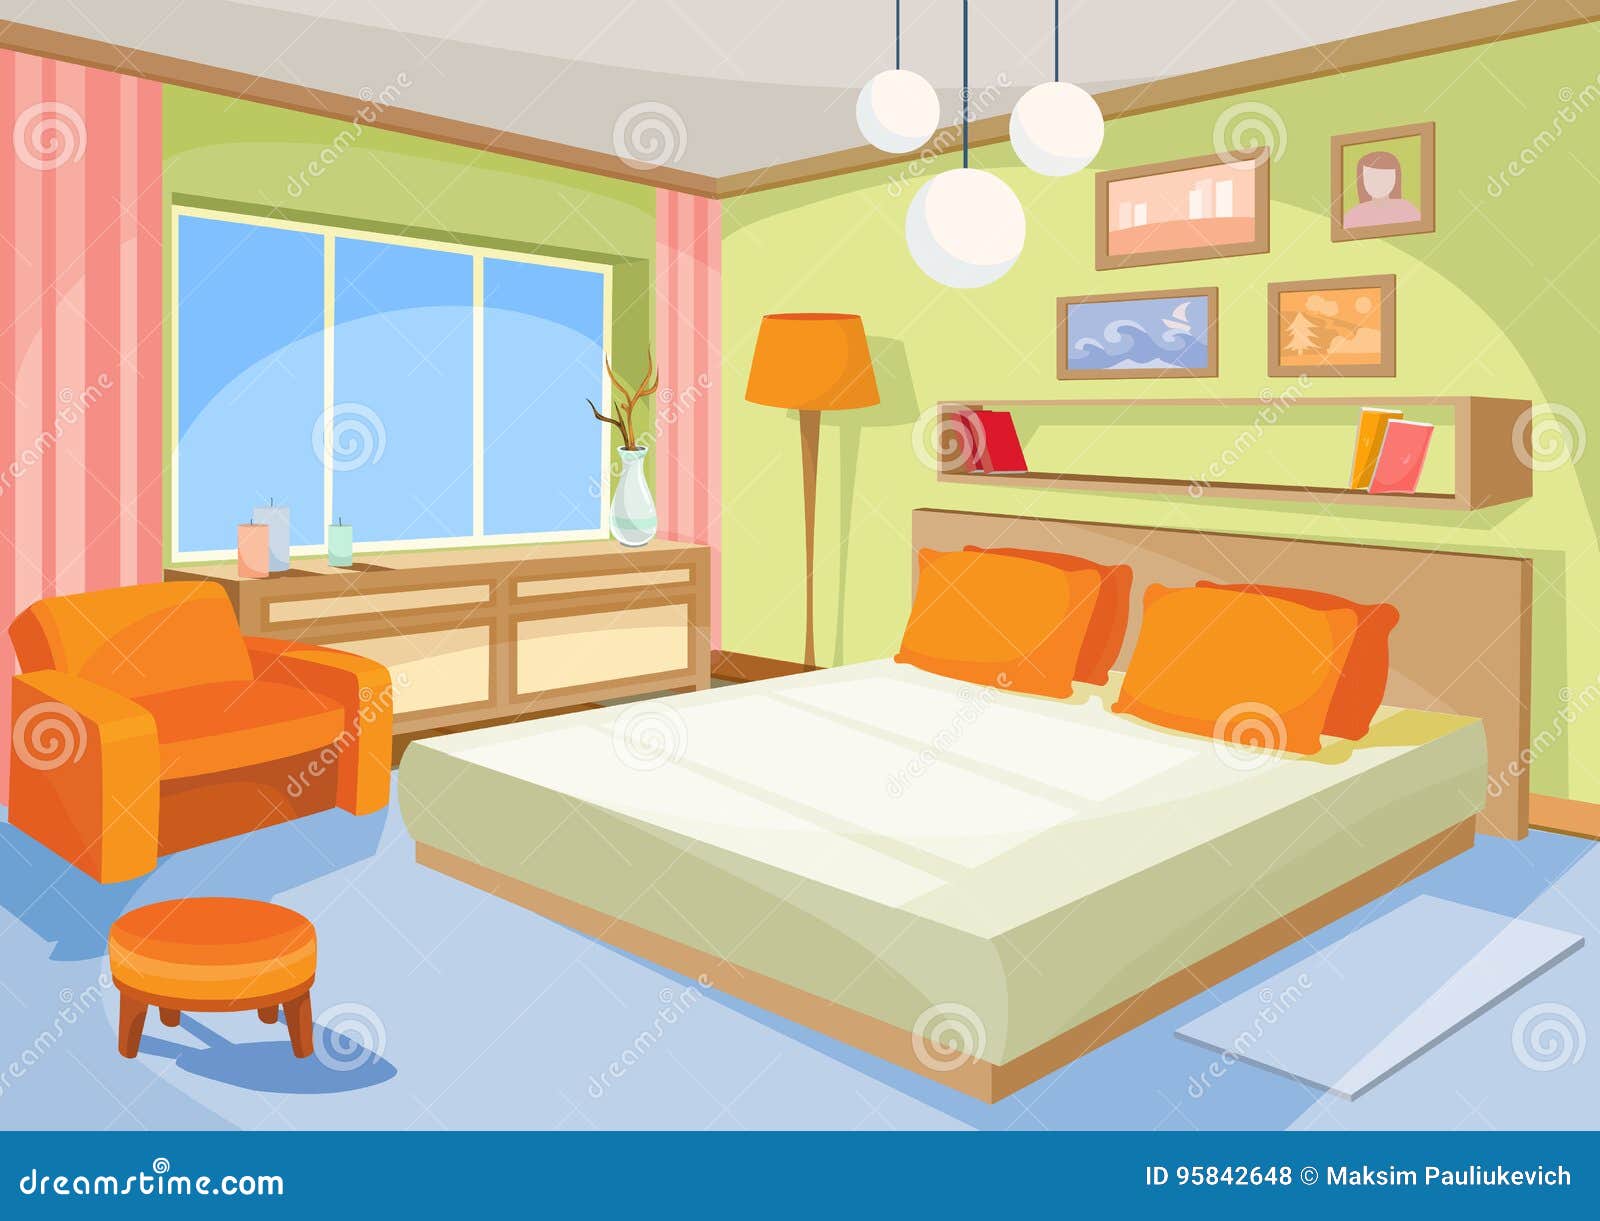 Bedroom Cartoon Stock Illustrations – 25,596 Bedroom Cartoon Stock  Illustrations, Vectors & Clipart - Dreamstime